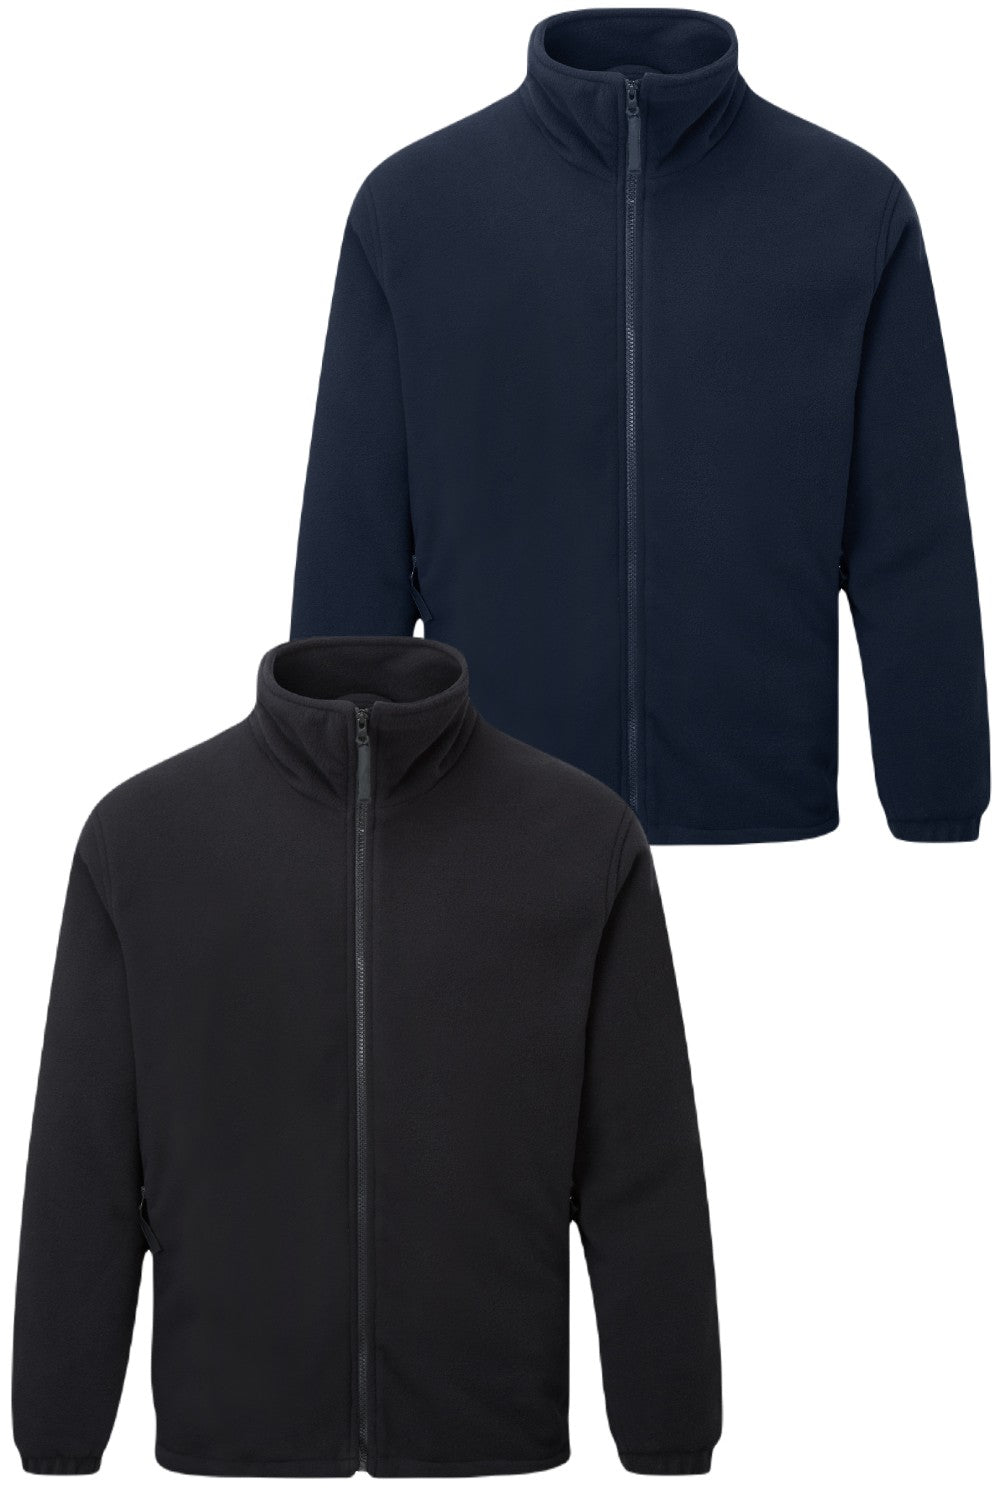 Fort Lomond Fleece Jacket in Navy Blue, Black